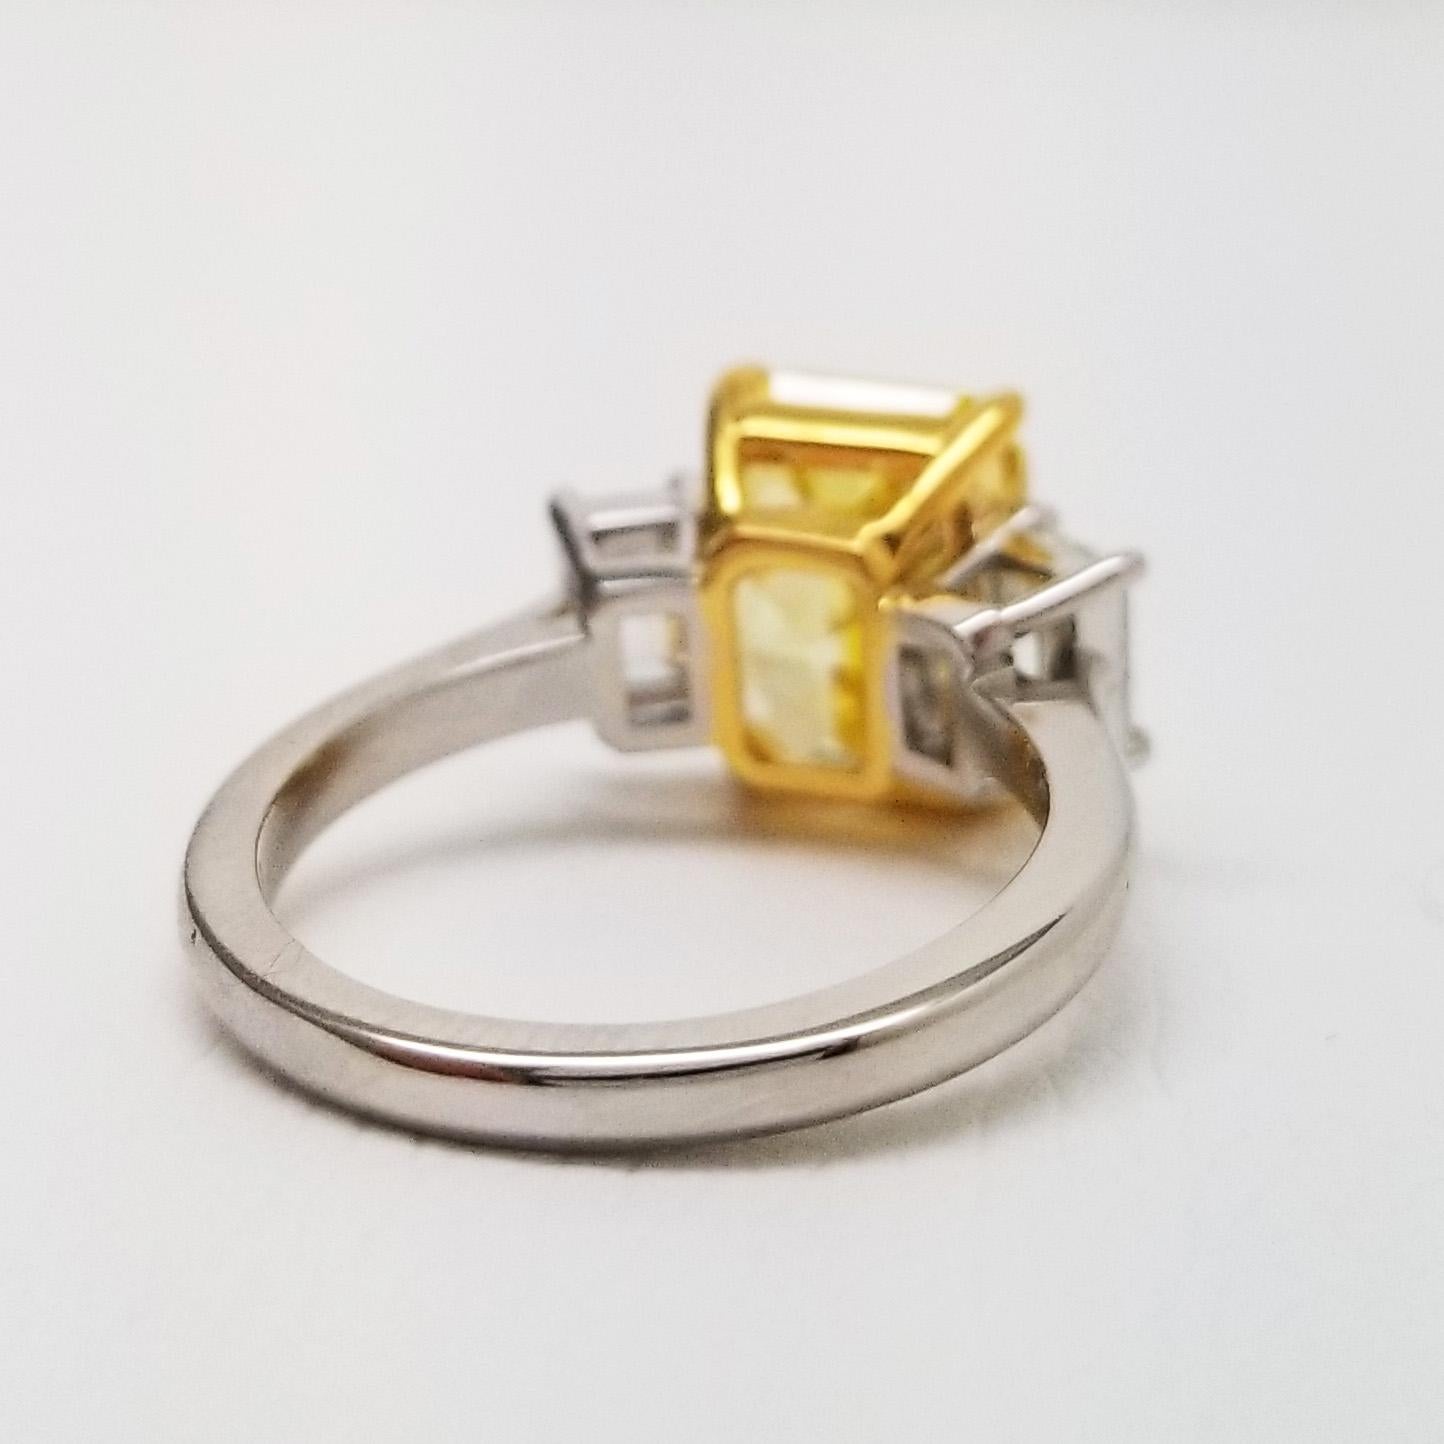 GIA-zertifizierter VS1 natürlicher lebhafter gelber natürlicher Diamant 5,18 Karat Verlobungsring. Verlobungsring im Smaragdschliff mit 3 Steinen und einem lebhaften gelben Diamanten GIA 5,18 ct VS1 in der Mitte von Scarselli.

Ein eleganter